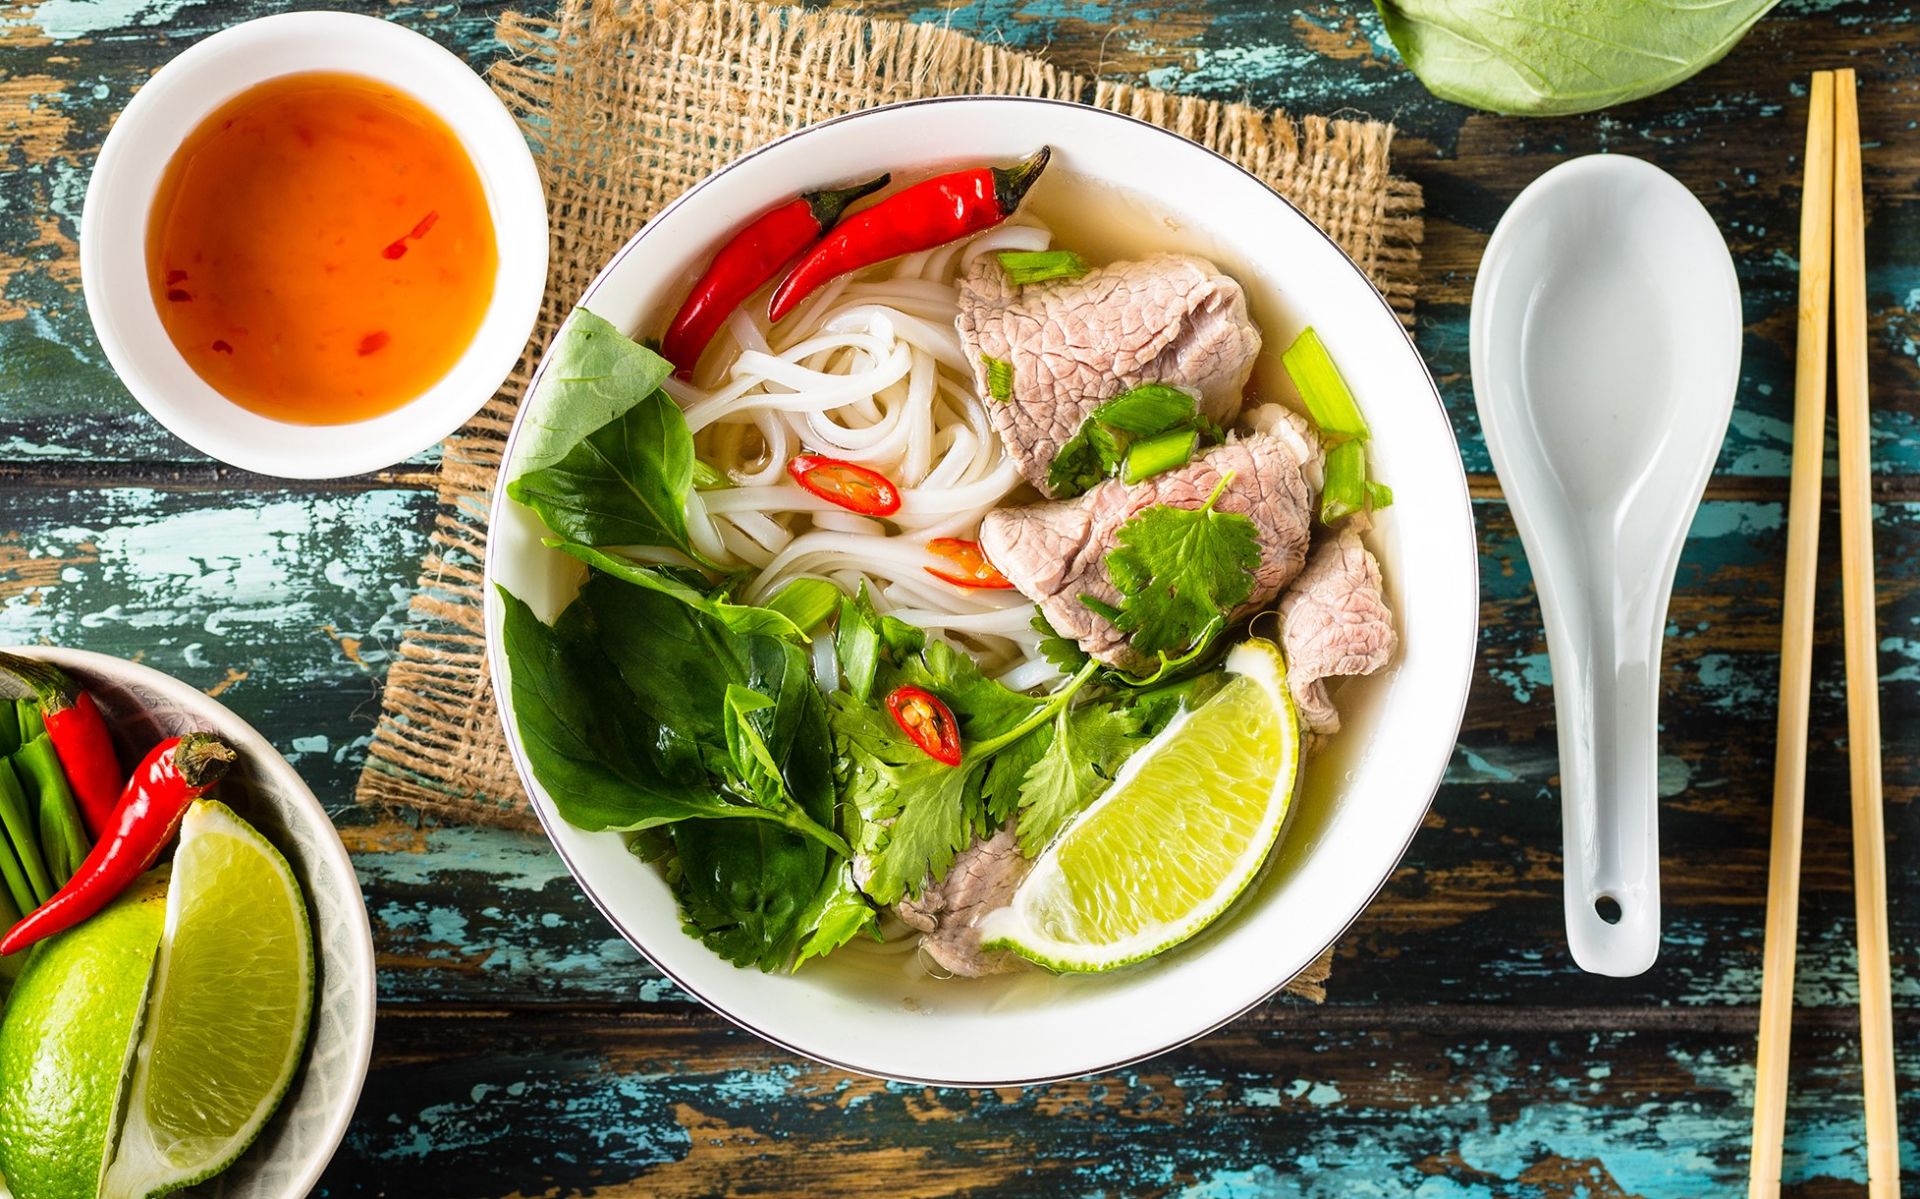 TasteAtlas nhận định, phở là món ăn truyền thống của Việt Nam, cũng là một món ăn quốc dân, món ăn đường phố thể hiện phong cách sống của người Việt.